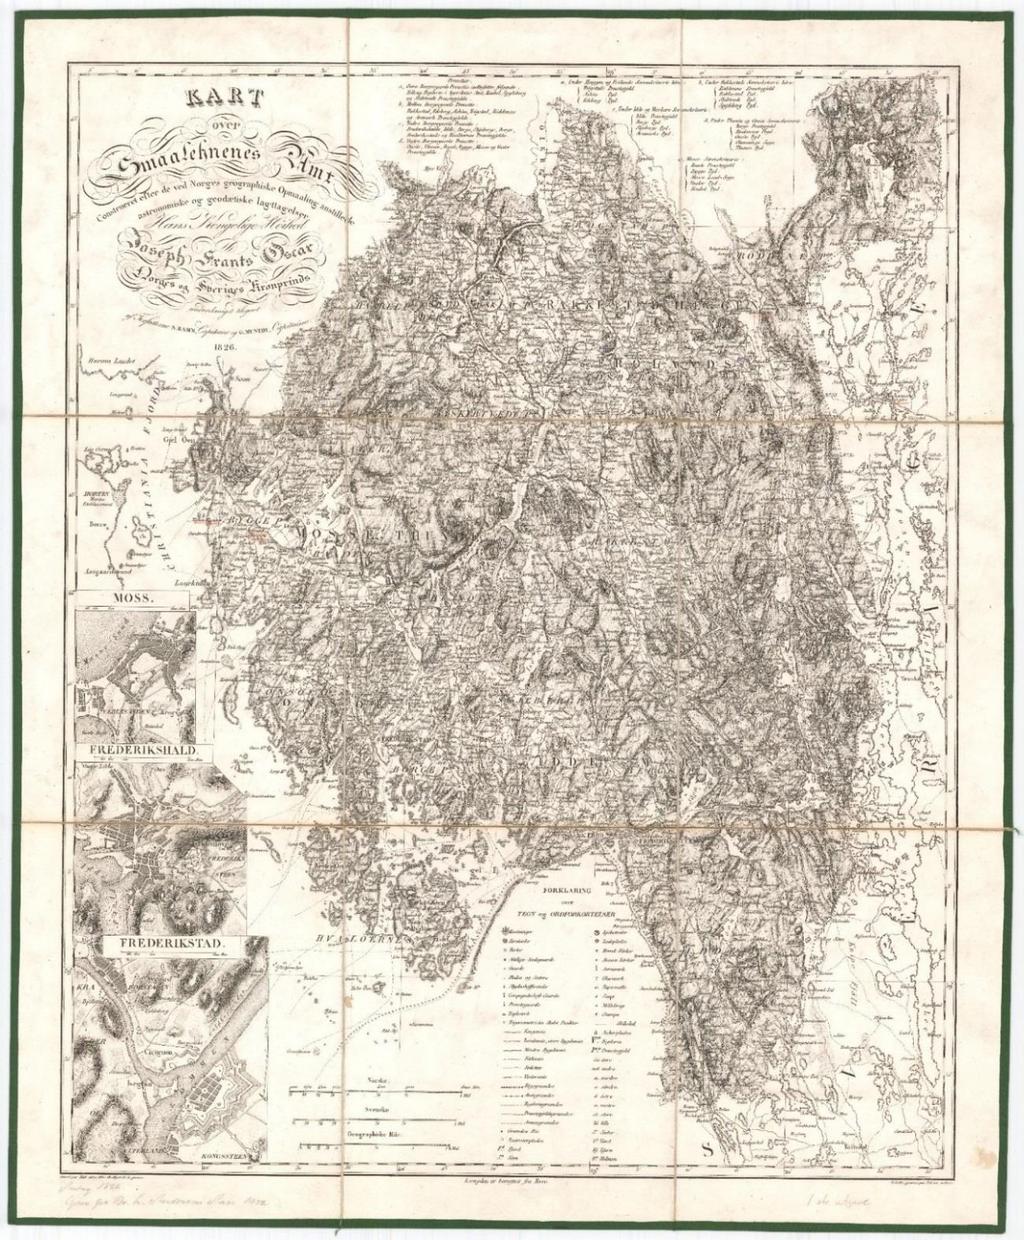 5.4 Amtskartet over Smaalenenes Amt (Østfold) fra 1826 Amtskartet over Smaalenenes Amt (Østfold) var som nevnt det første amtskartet som ble laget da den store offentlige amtskartleggingen kom i gang.